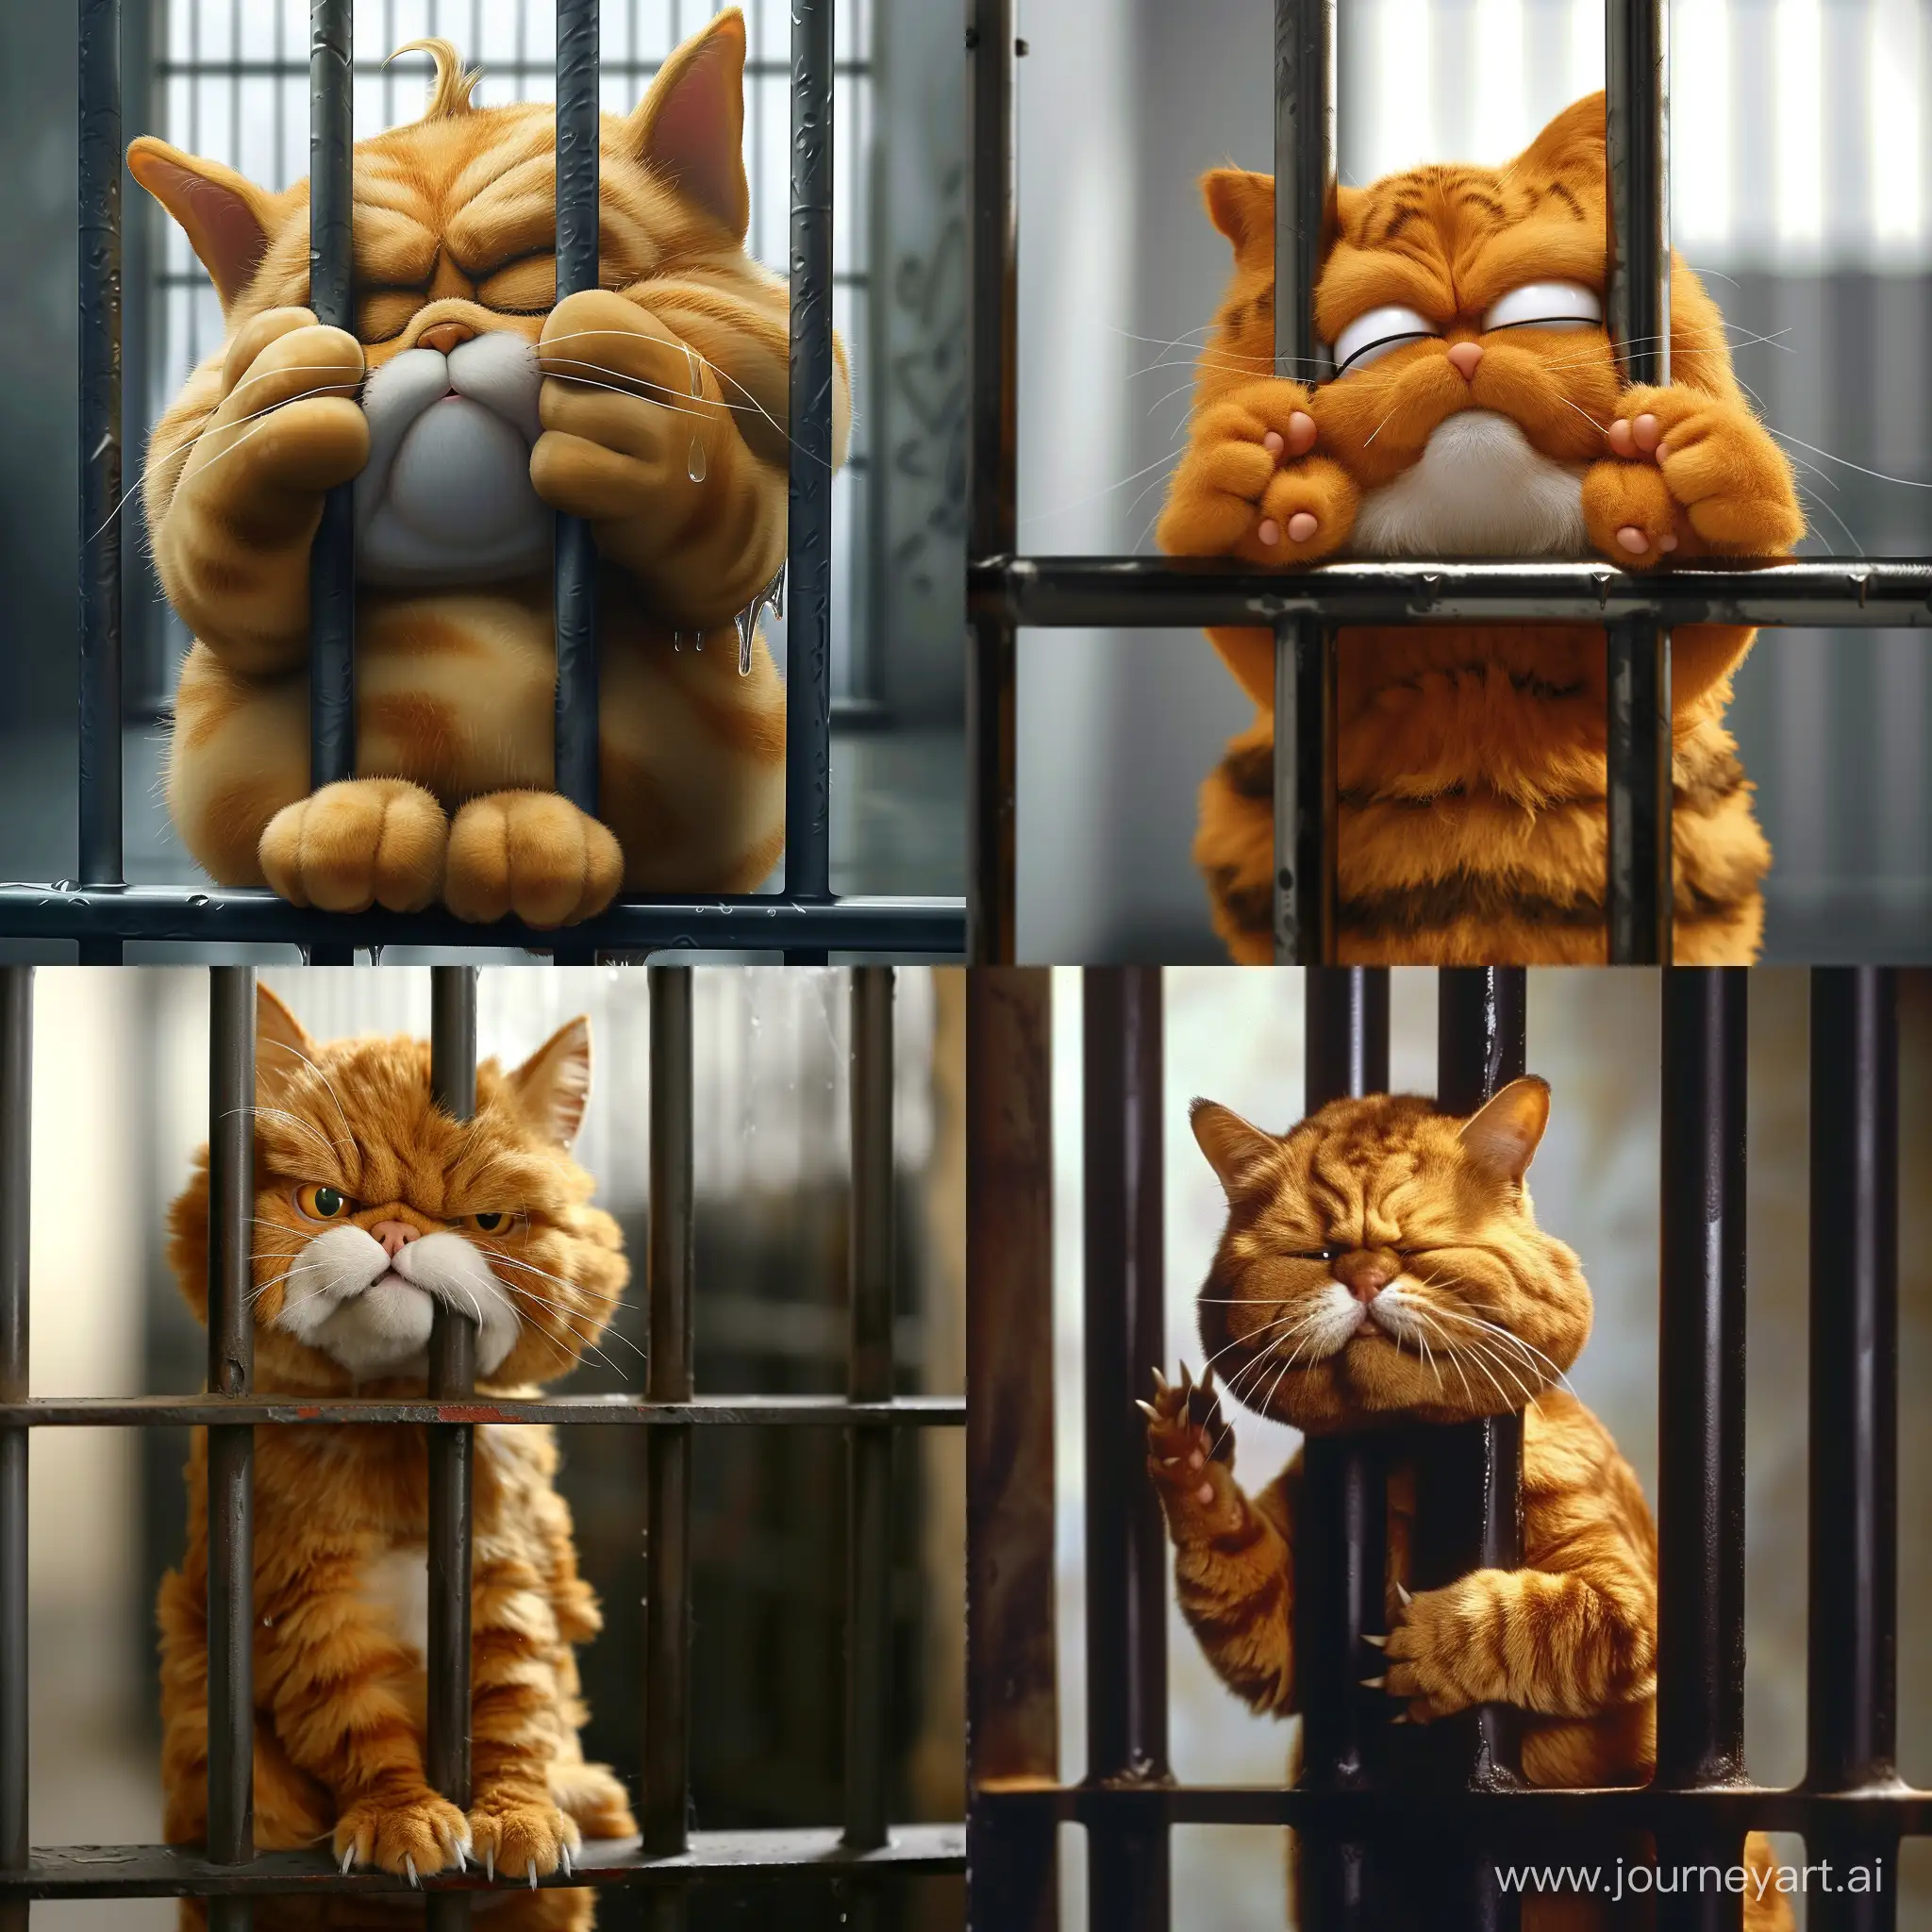 Жирный кот Гарфилд ,действие: плачет в тюрьме за решеткой